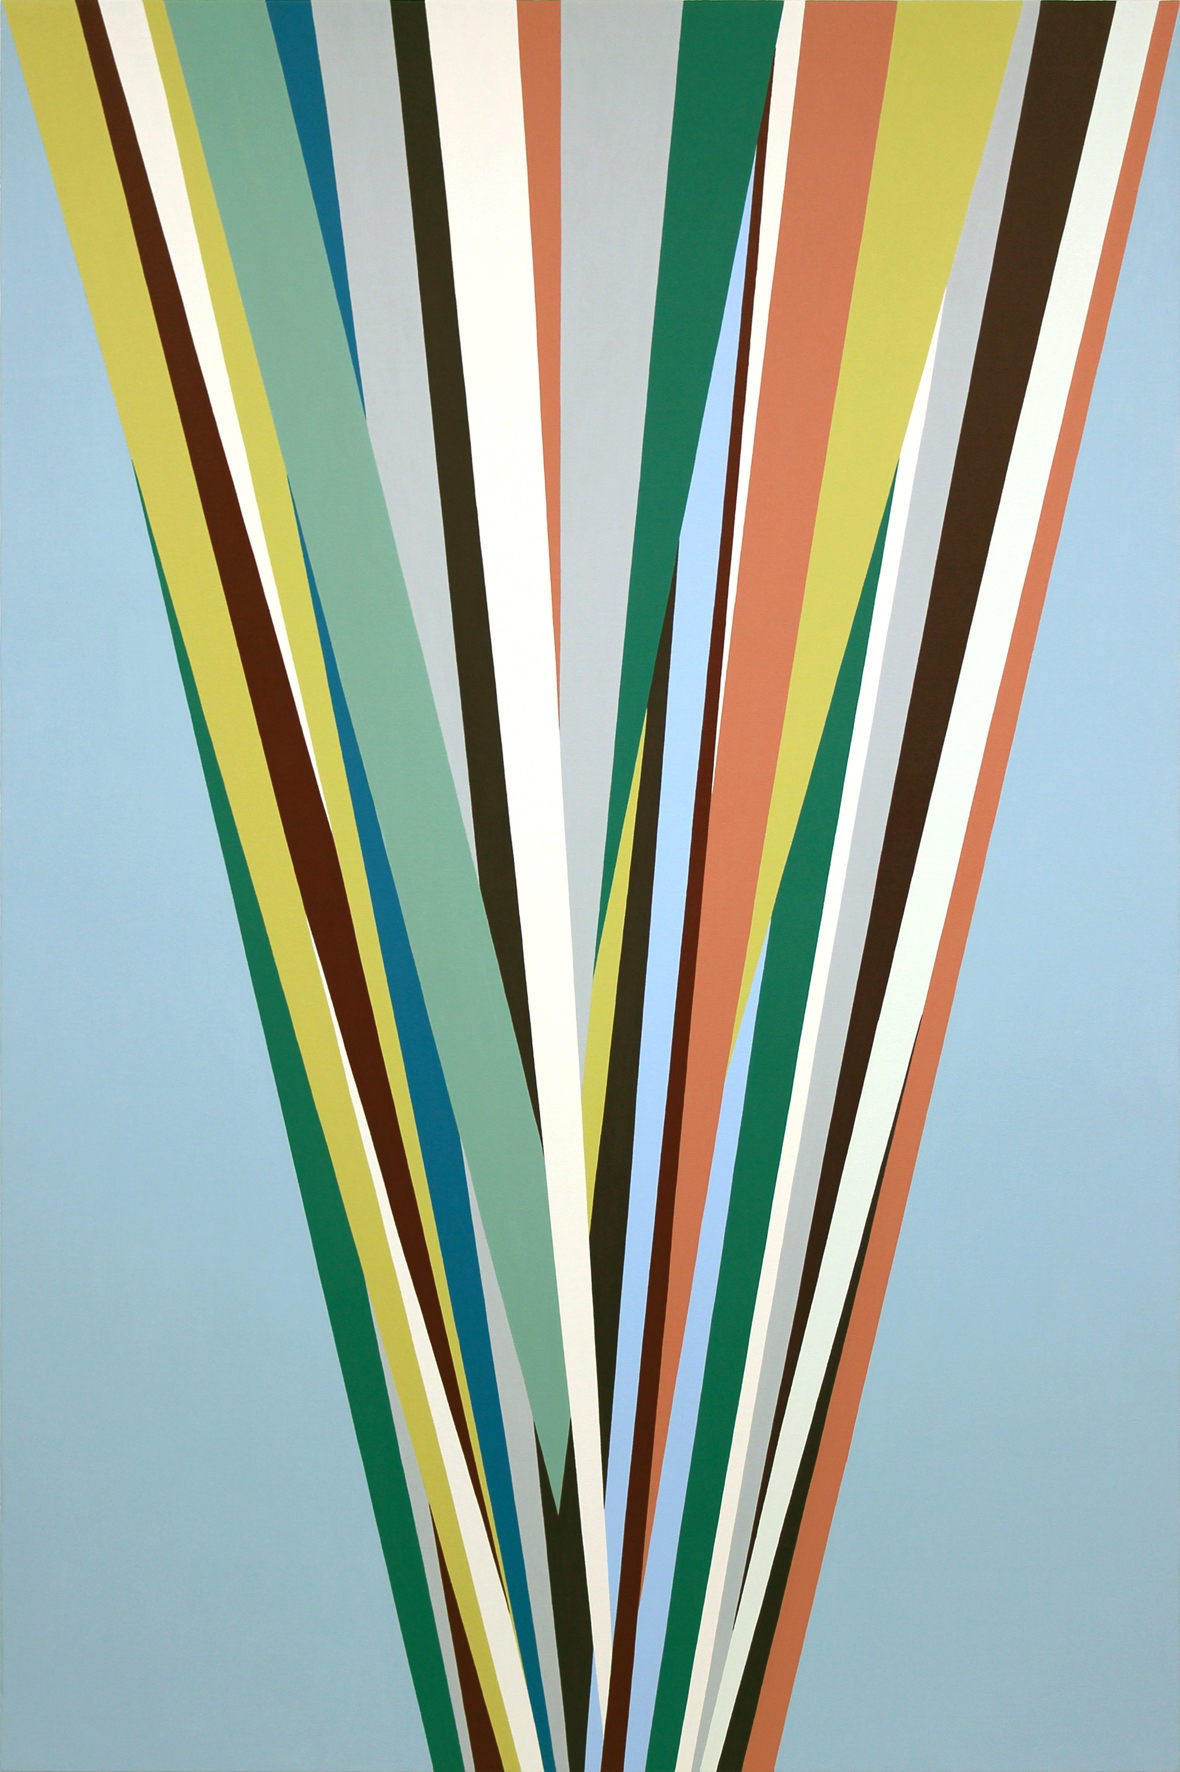 Memorias Imaginadas, 2012, acrílico sobre lienzo, 195 x 130 cm.